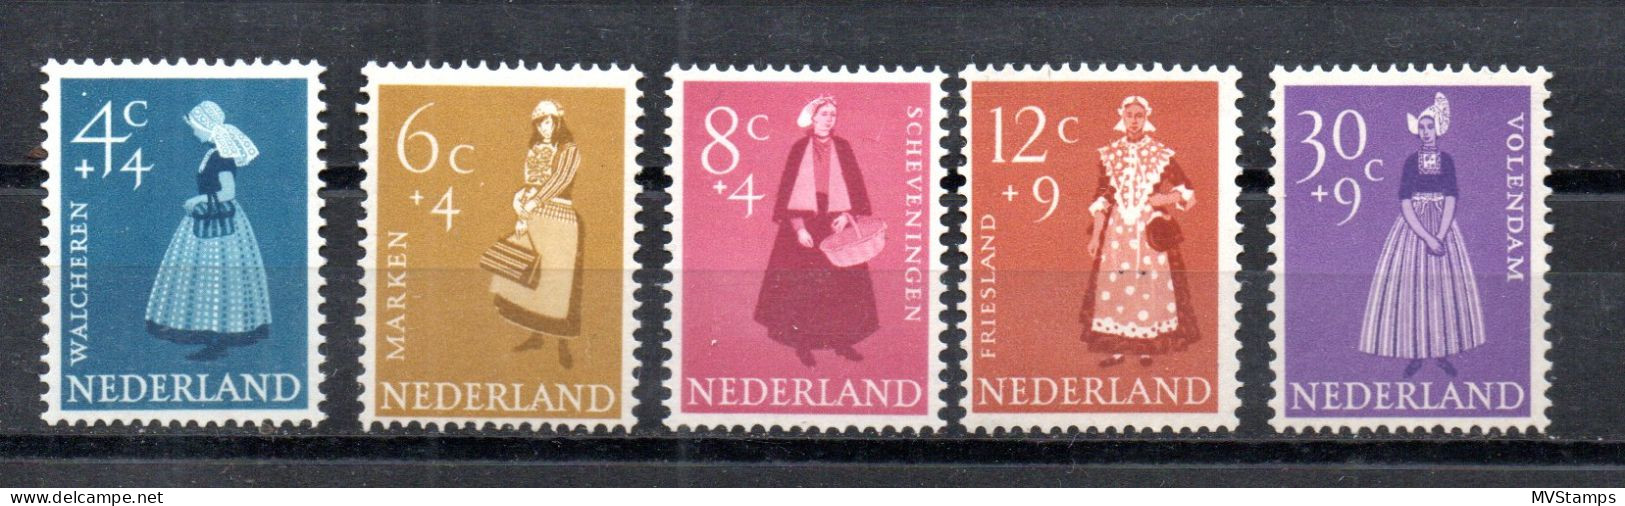 Netherlands 1958 Set Costumes/Trachten Stamps (Michel 712/16) MNH - Ongebruikt